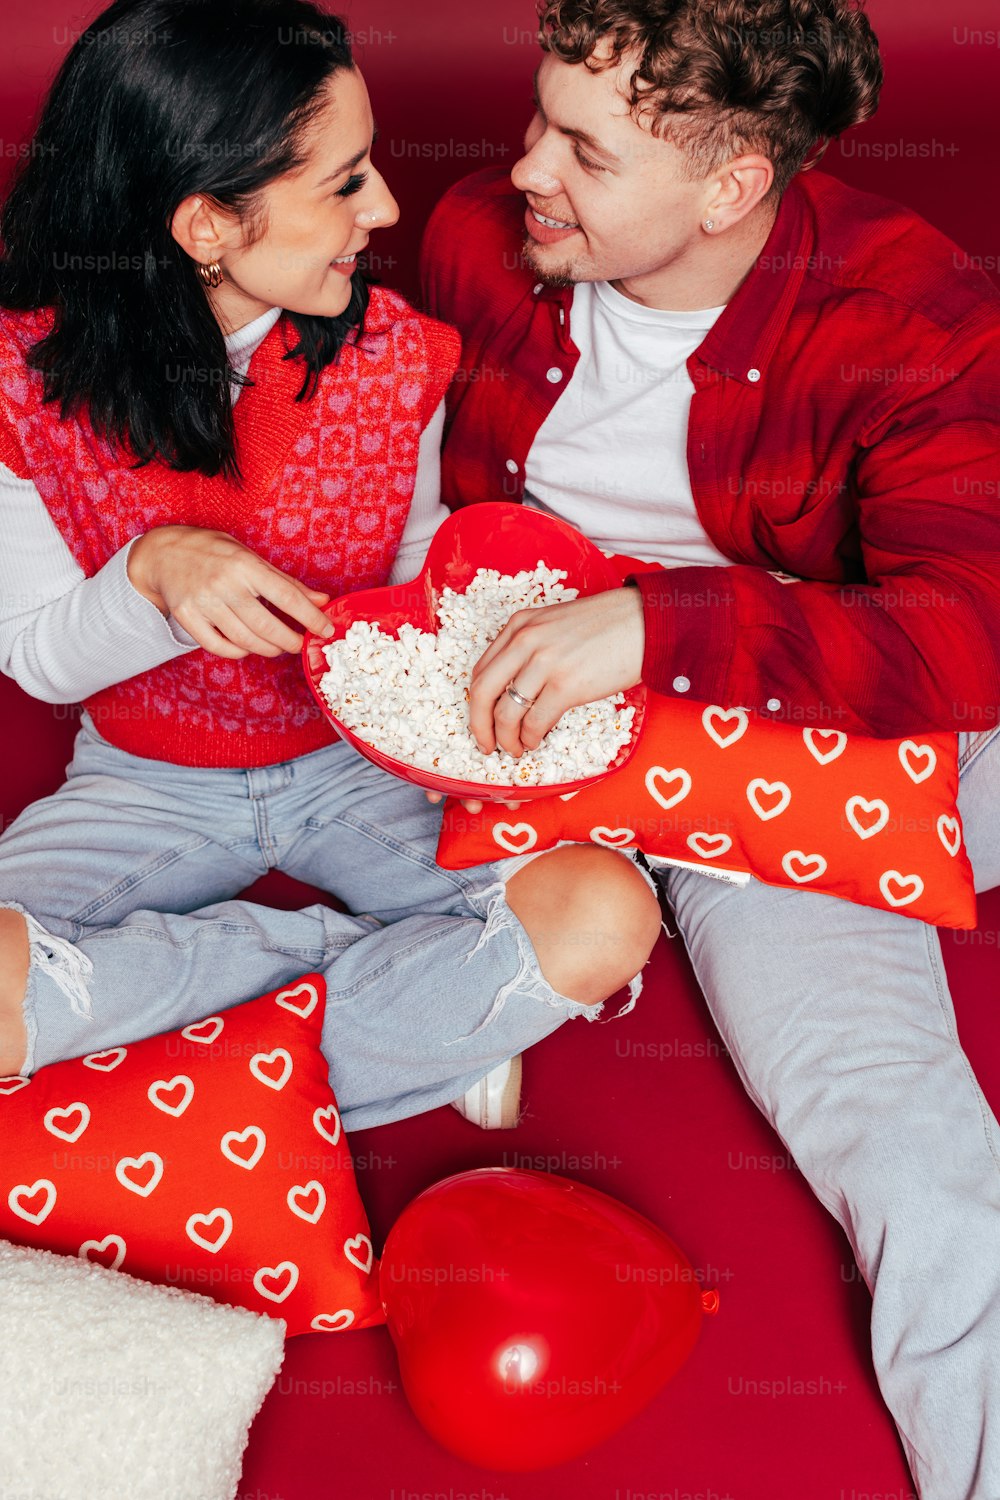 Ein Mann und eine Frau sitzen auf einer roten Couch